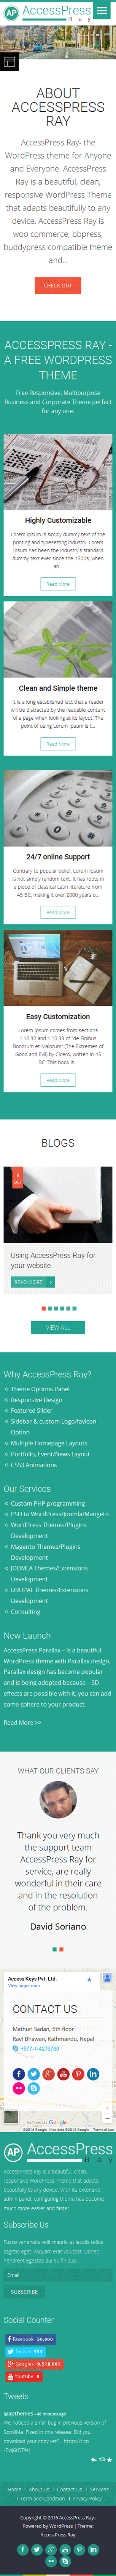 AccessPress Ray